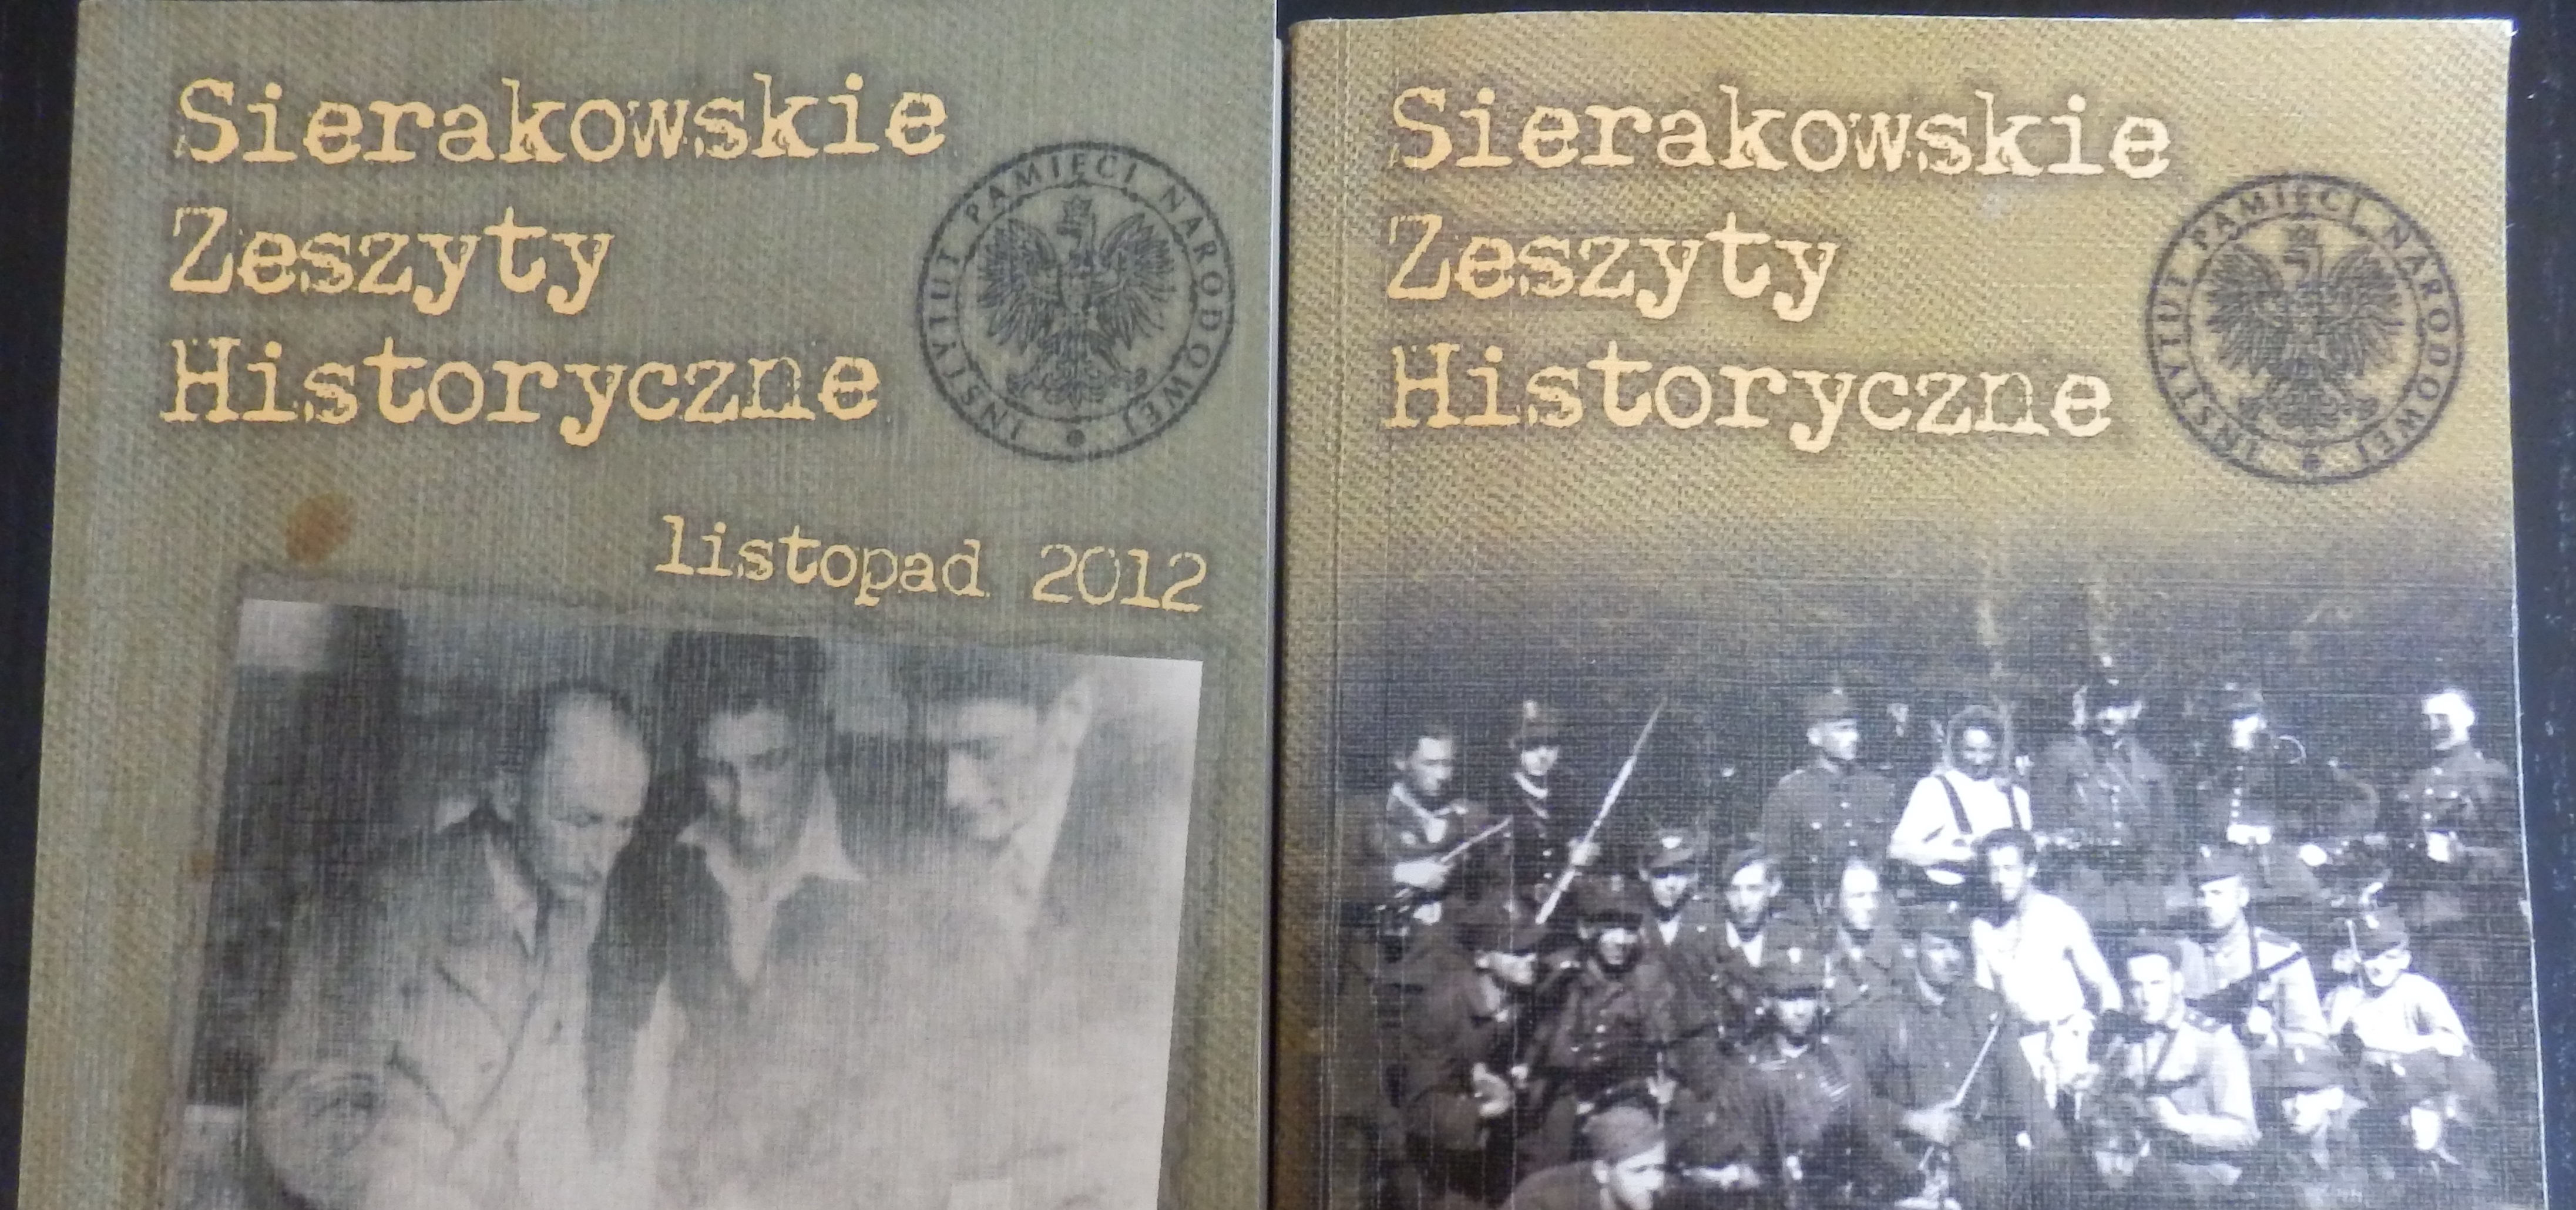 Sierakowskie Zeszyty historyczne - Maciej Mazurek